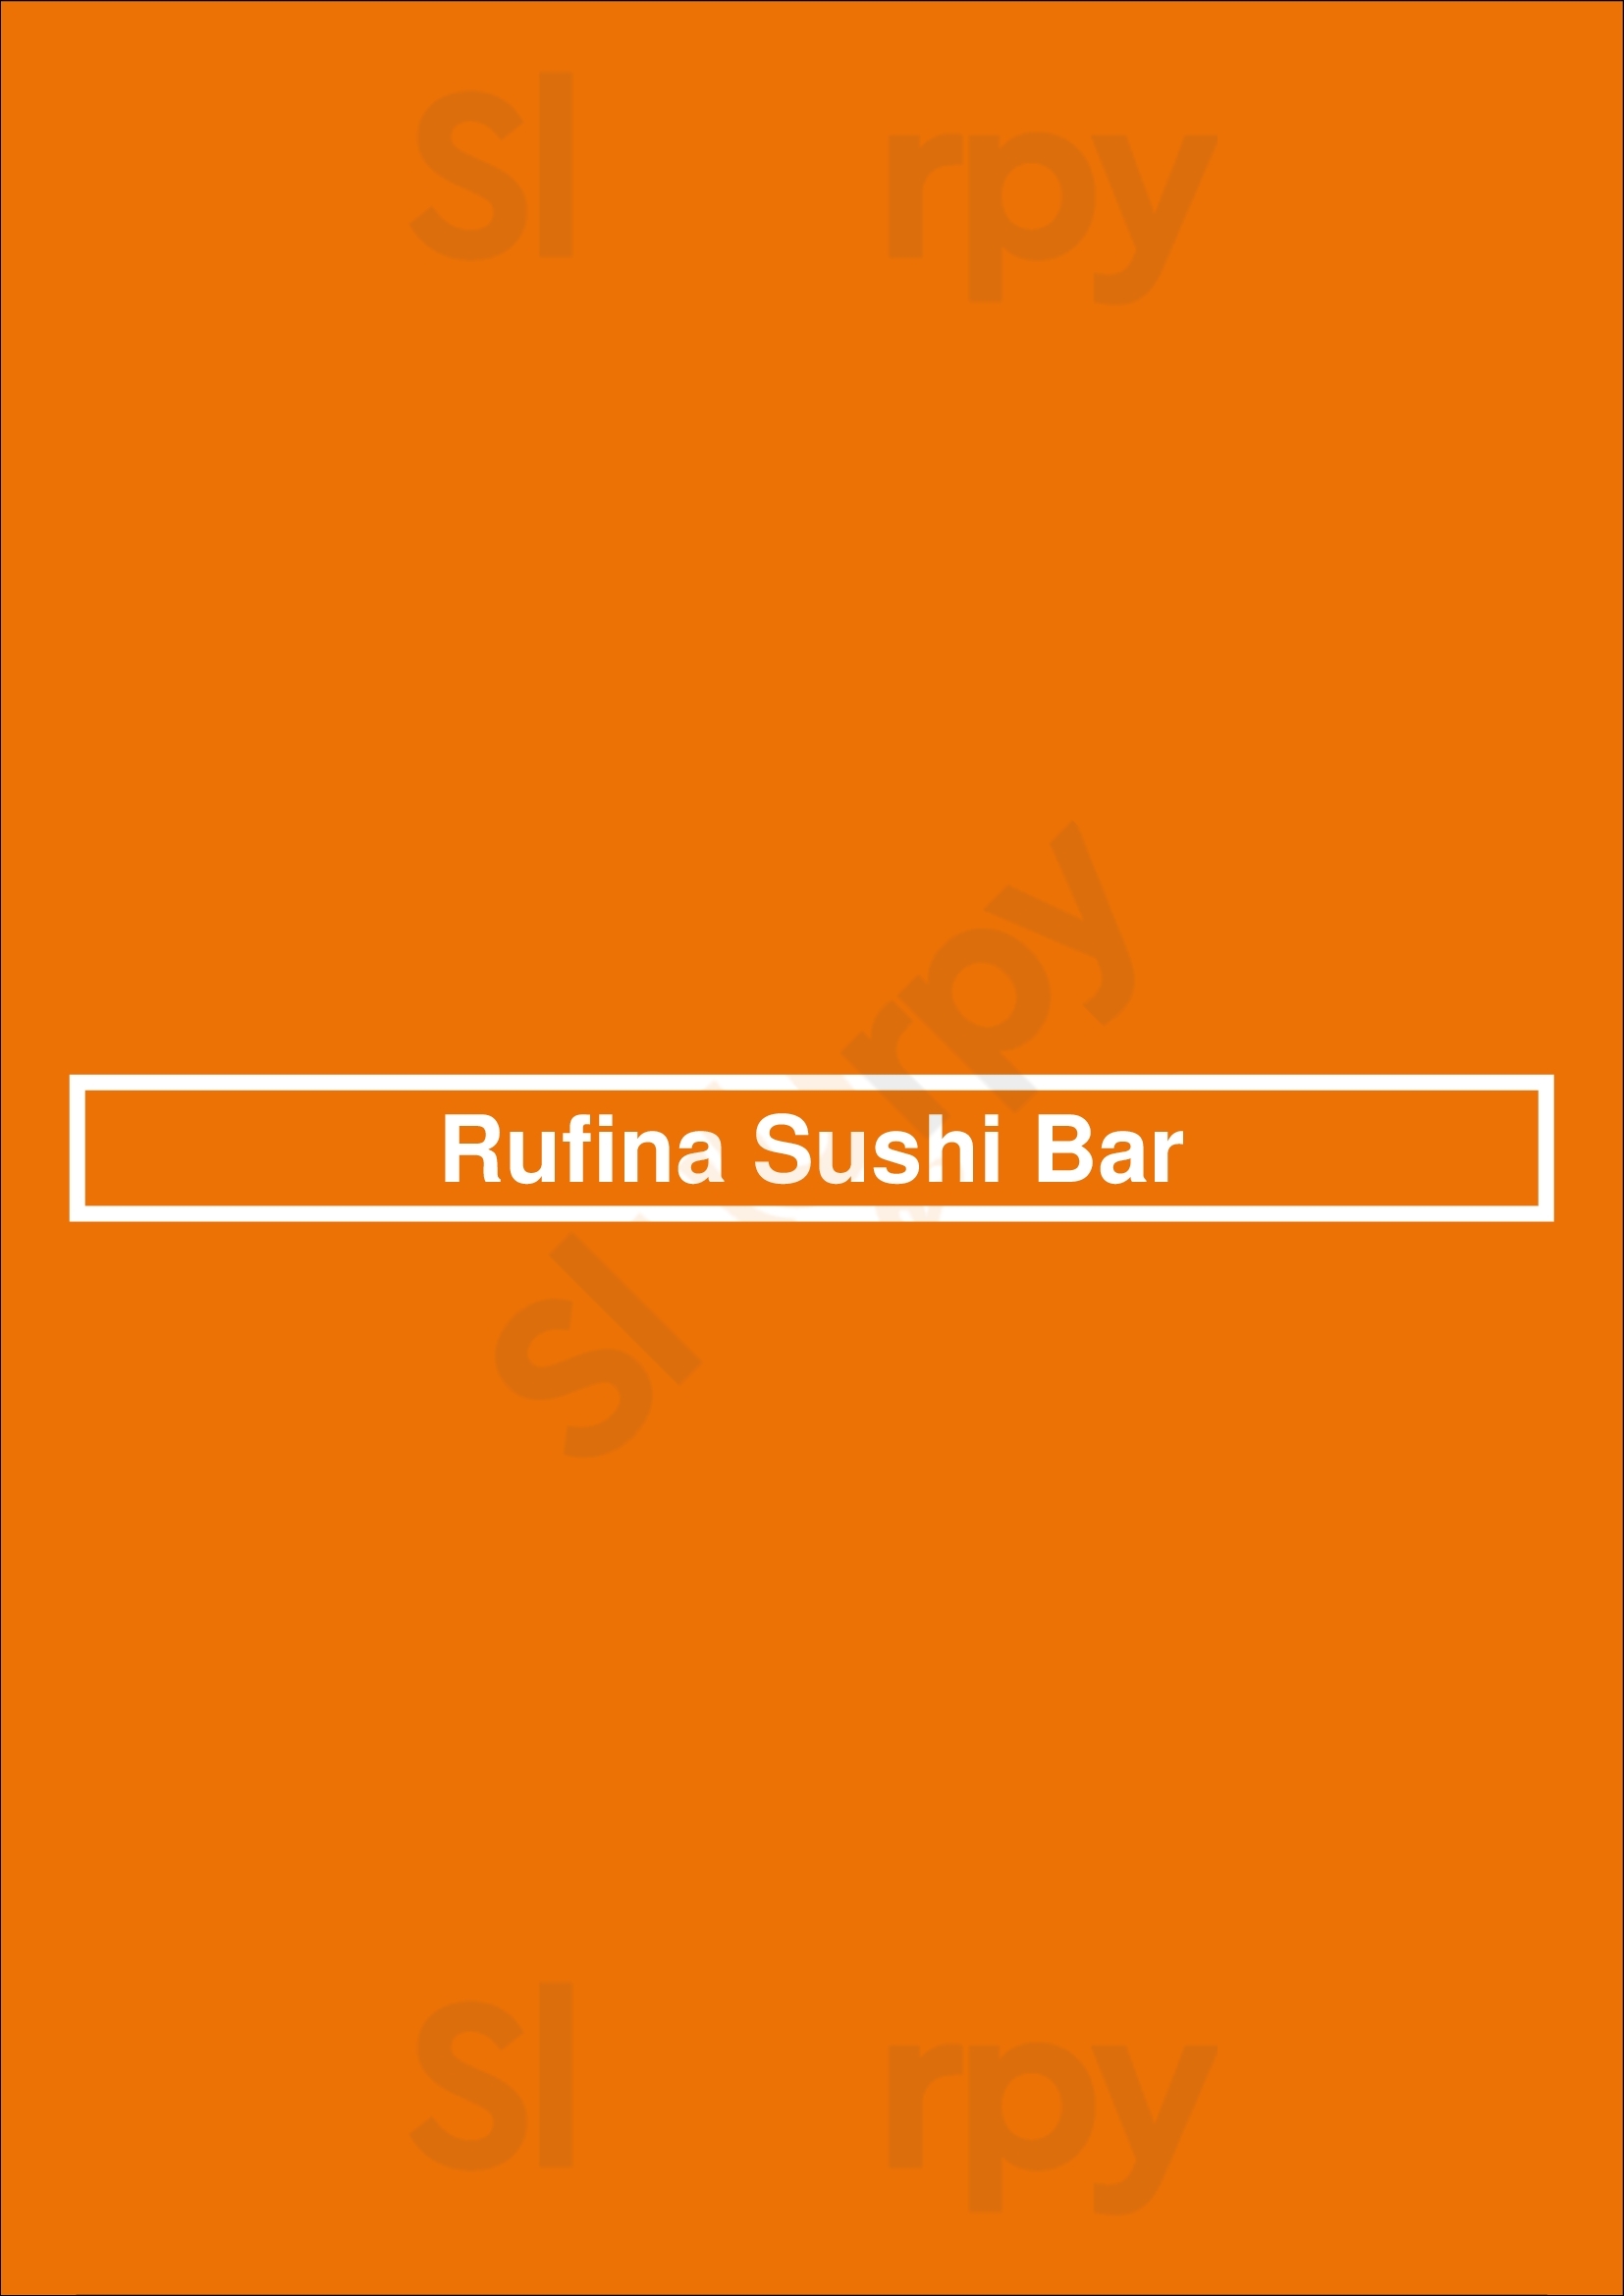 Rufina Sushi Bar Buenos Aires Menu - 1